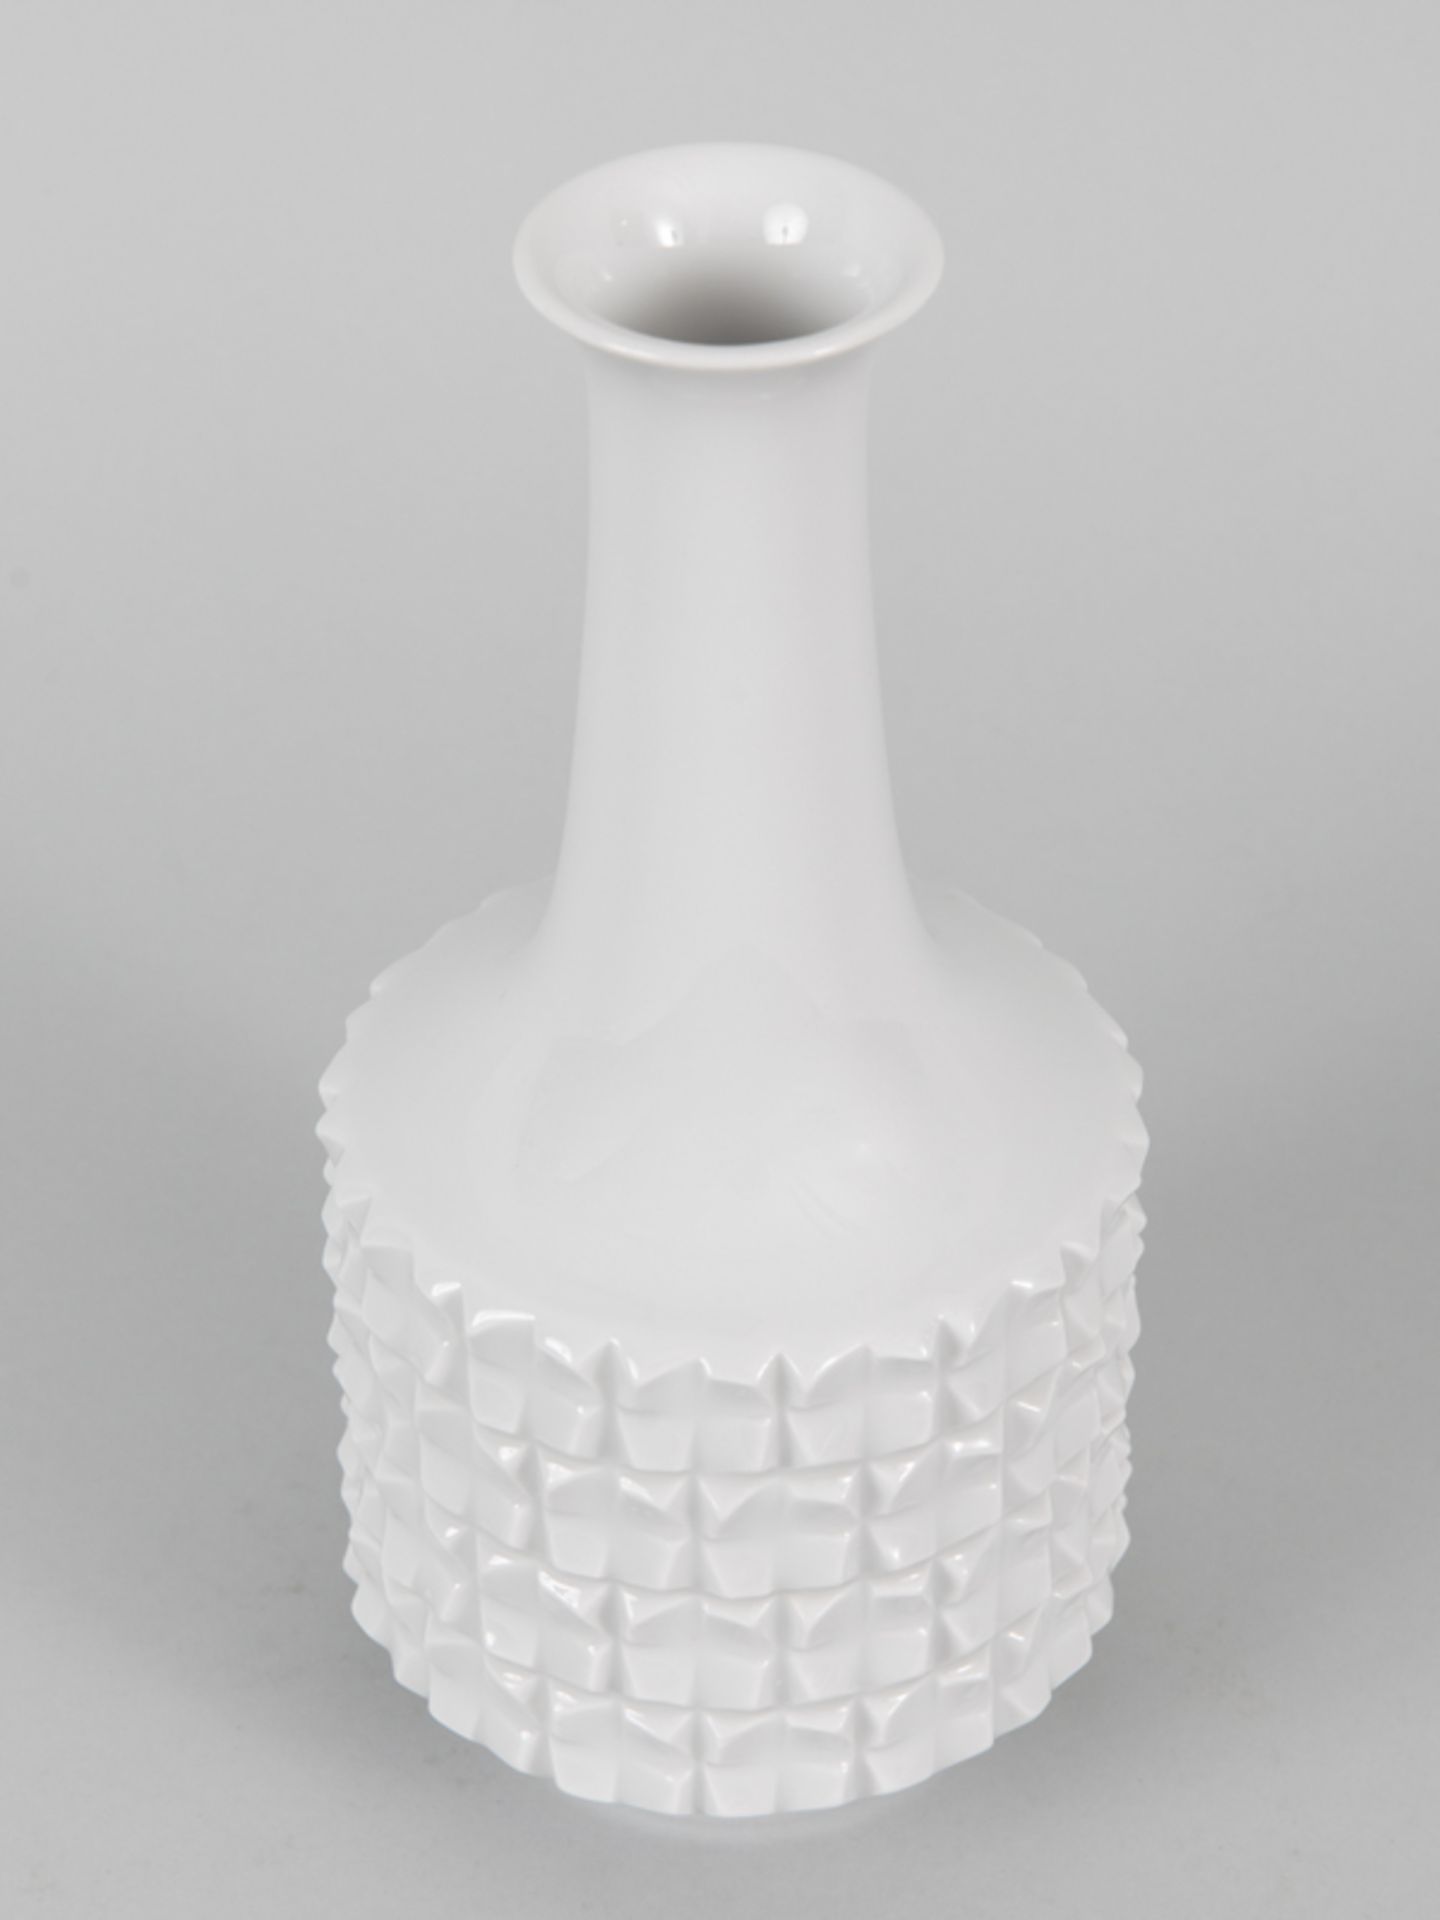 Vase mit Reliefdekor, Ludwig Zepner (1931-2010), 60er/70er Jahre, Meissen, 20. Jh. - Bild 2 aus 3